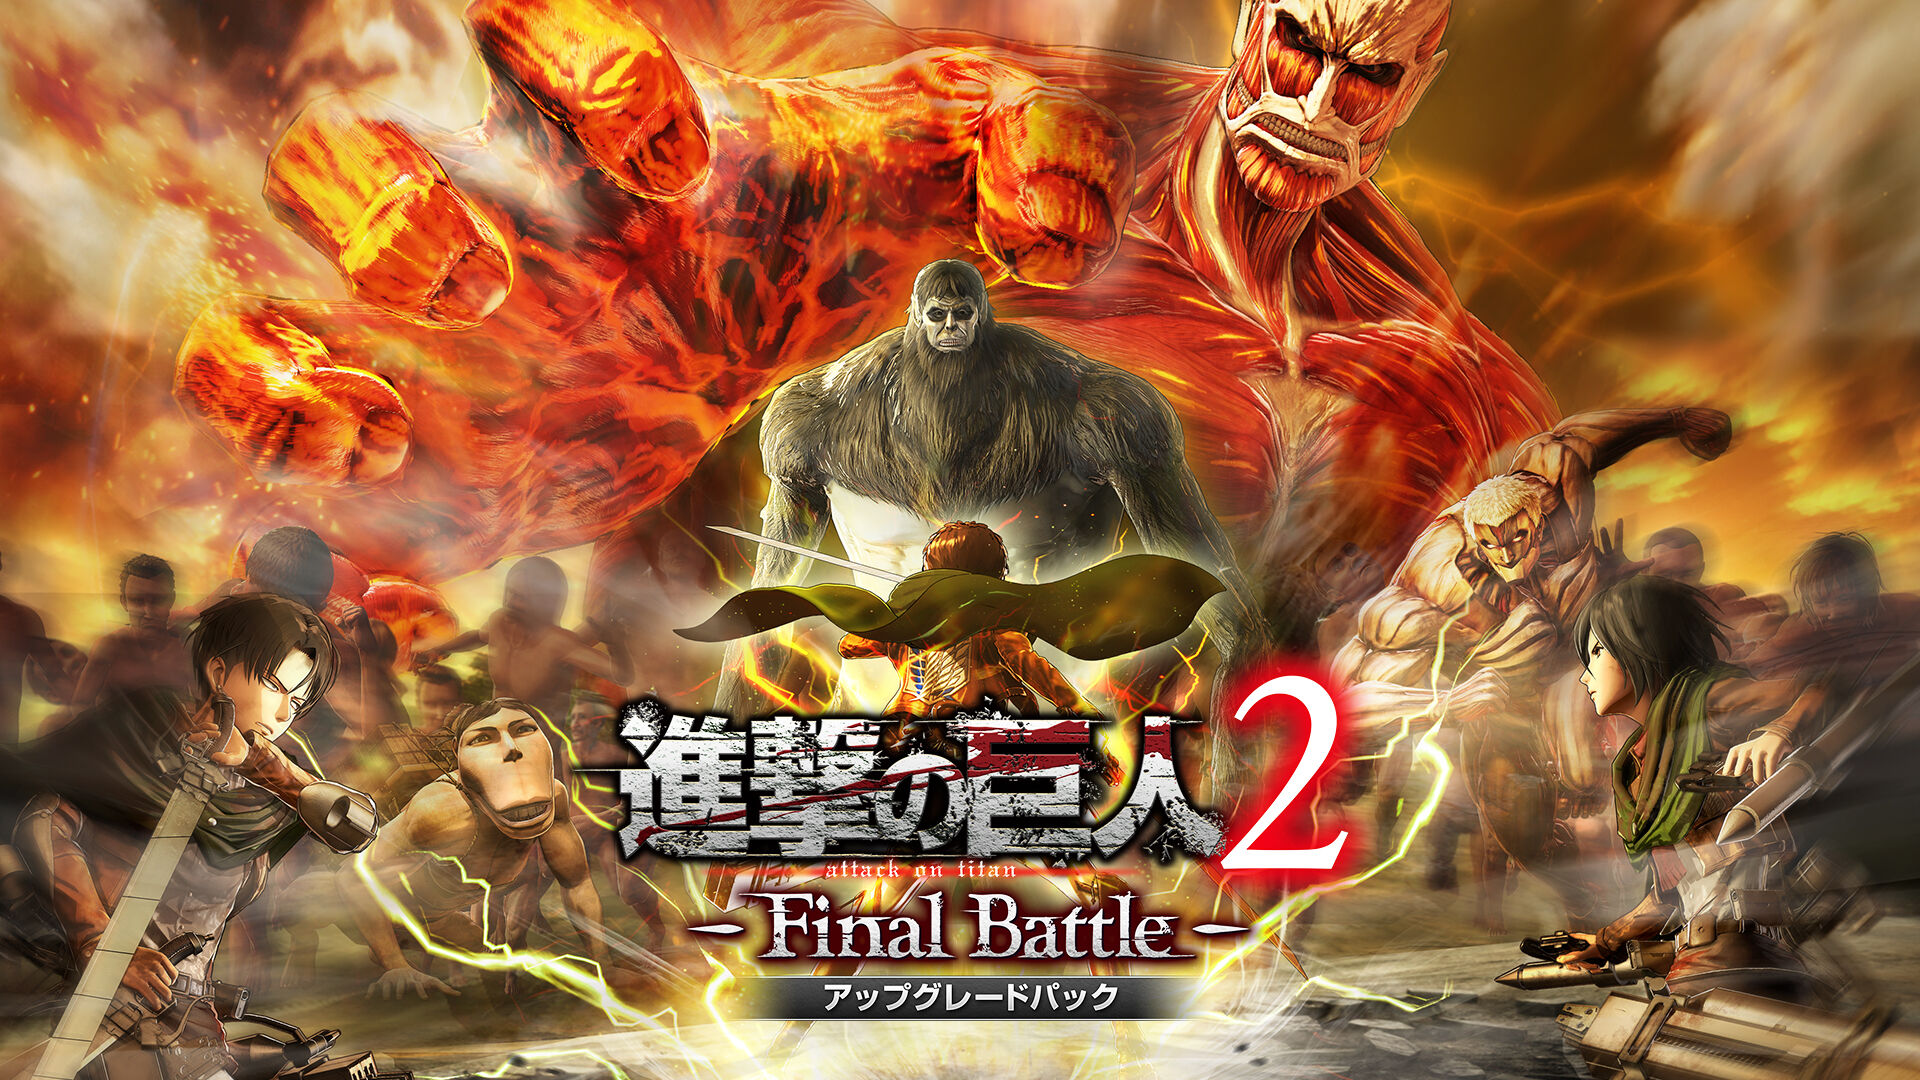 Final Battles [DVD]